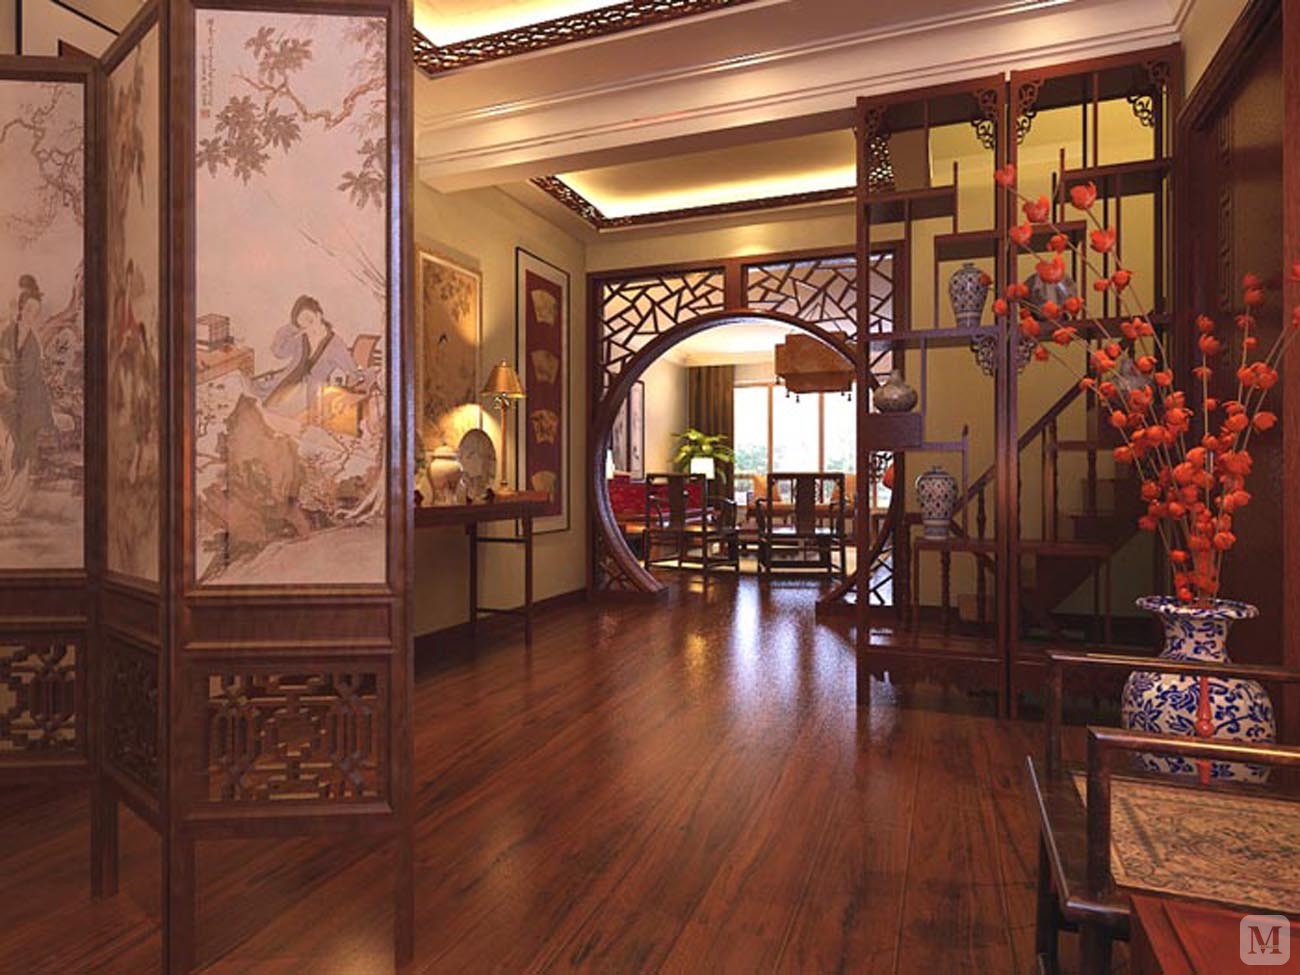 中式风格 中明清风格的主流体现 利用空间留白 给房间留出大面积展式